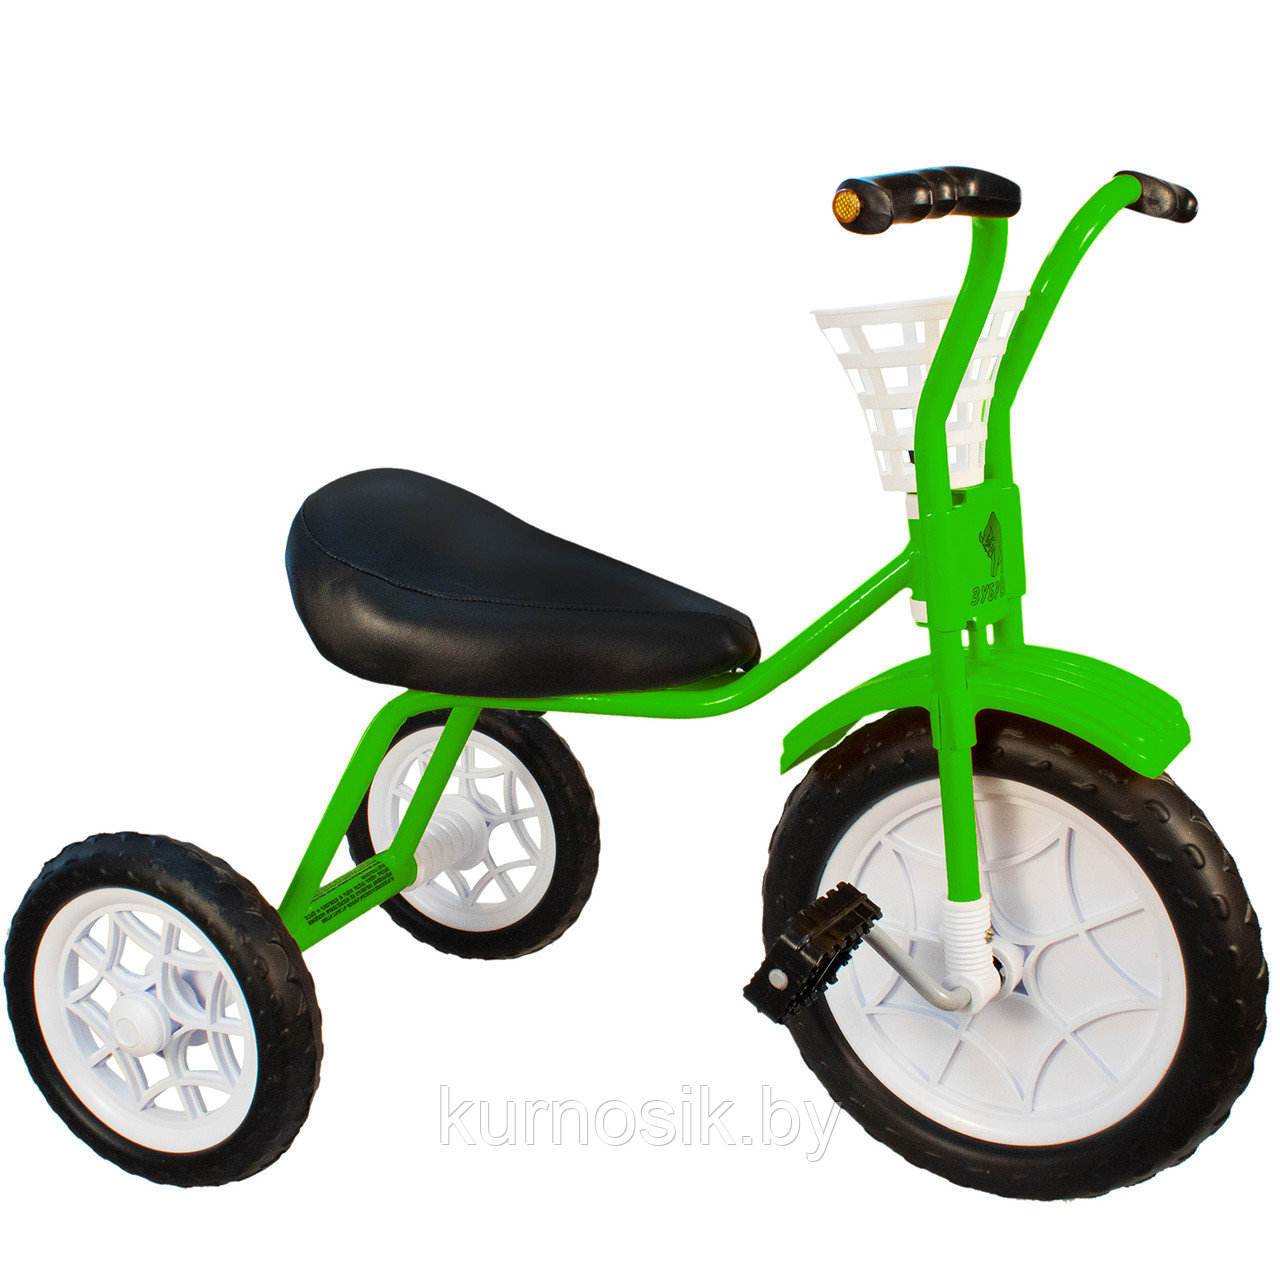 Трехколесный велосипед детский "Зубренок" (арт.526-611) зеленый